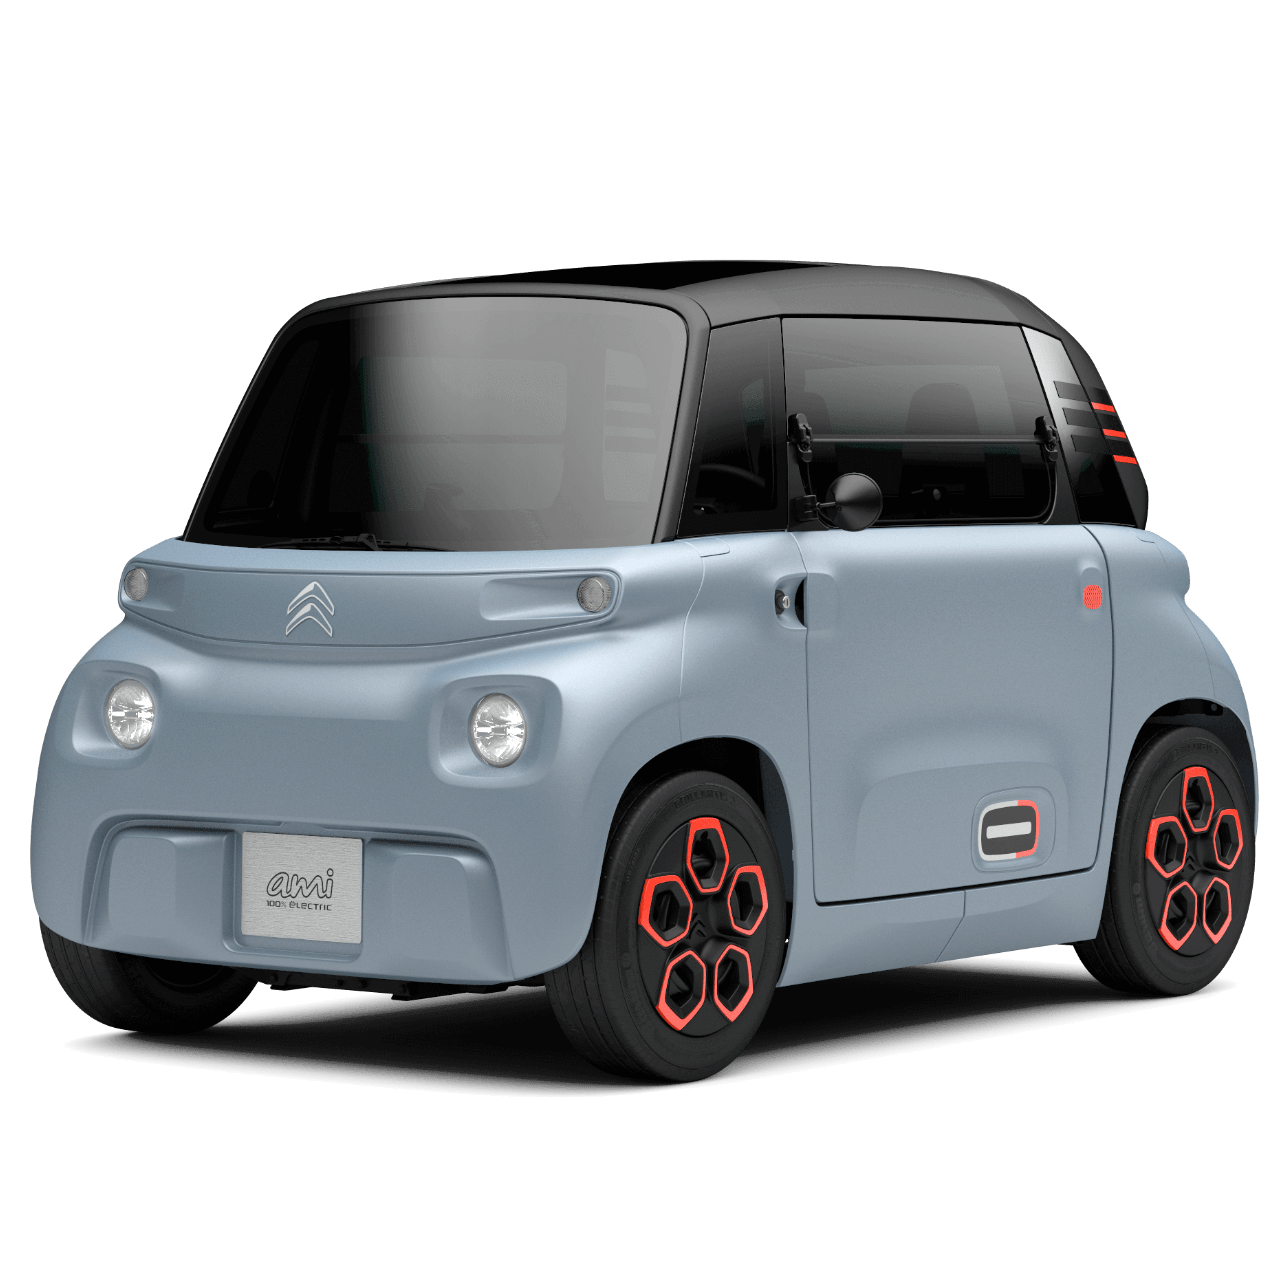 Toyota lance le C+ Pod, une mini-voiture 100% électrique